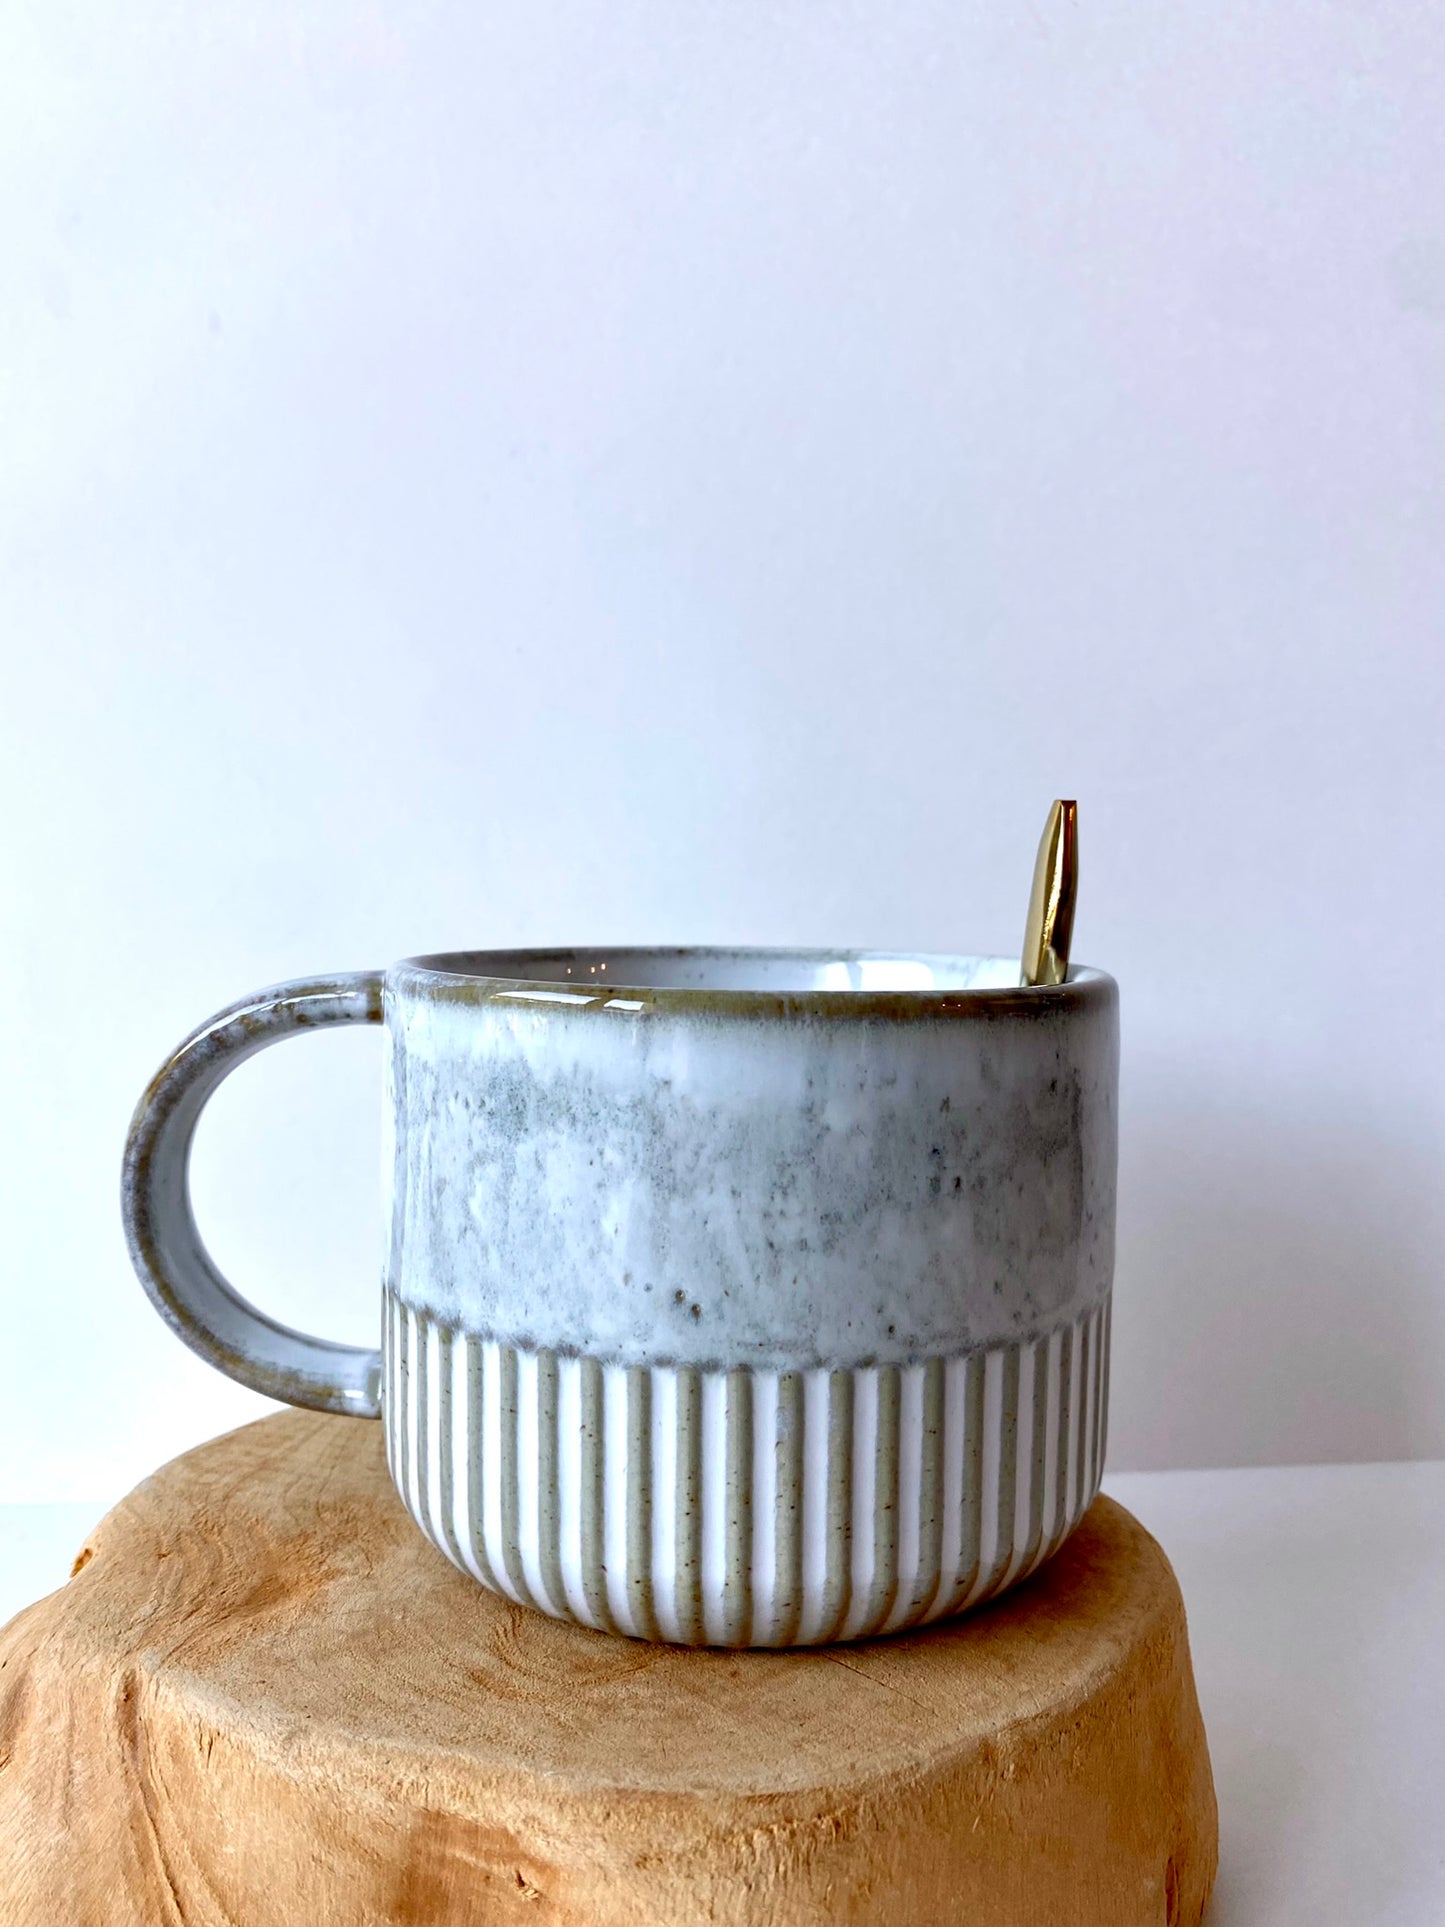 stoneware mug with crimped bottom